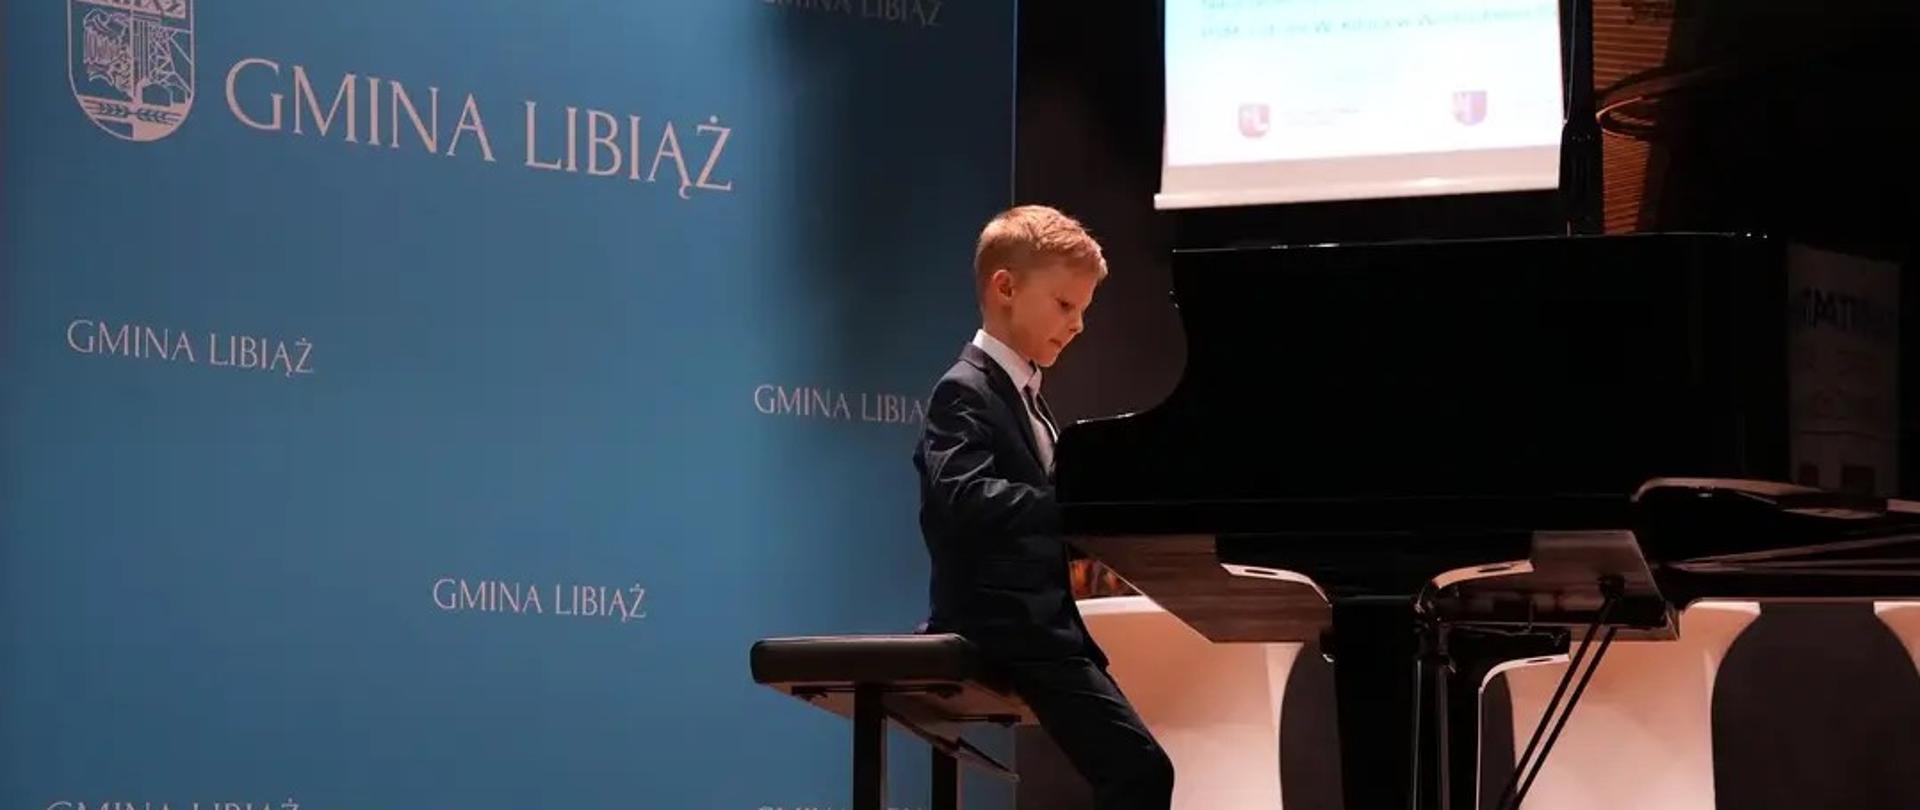 Chłopczyk gra na fortepianie